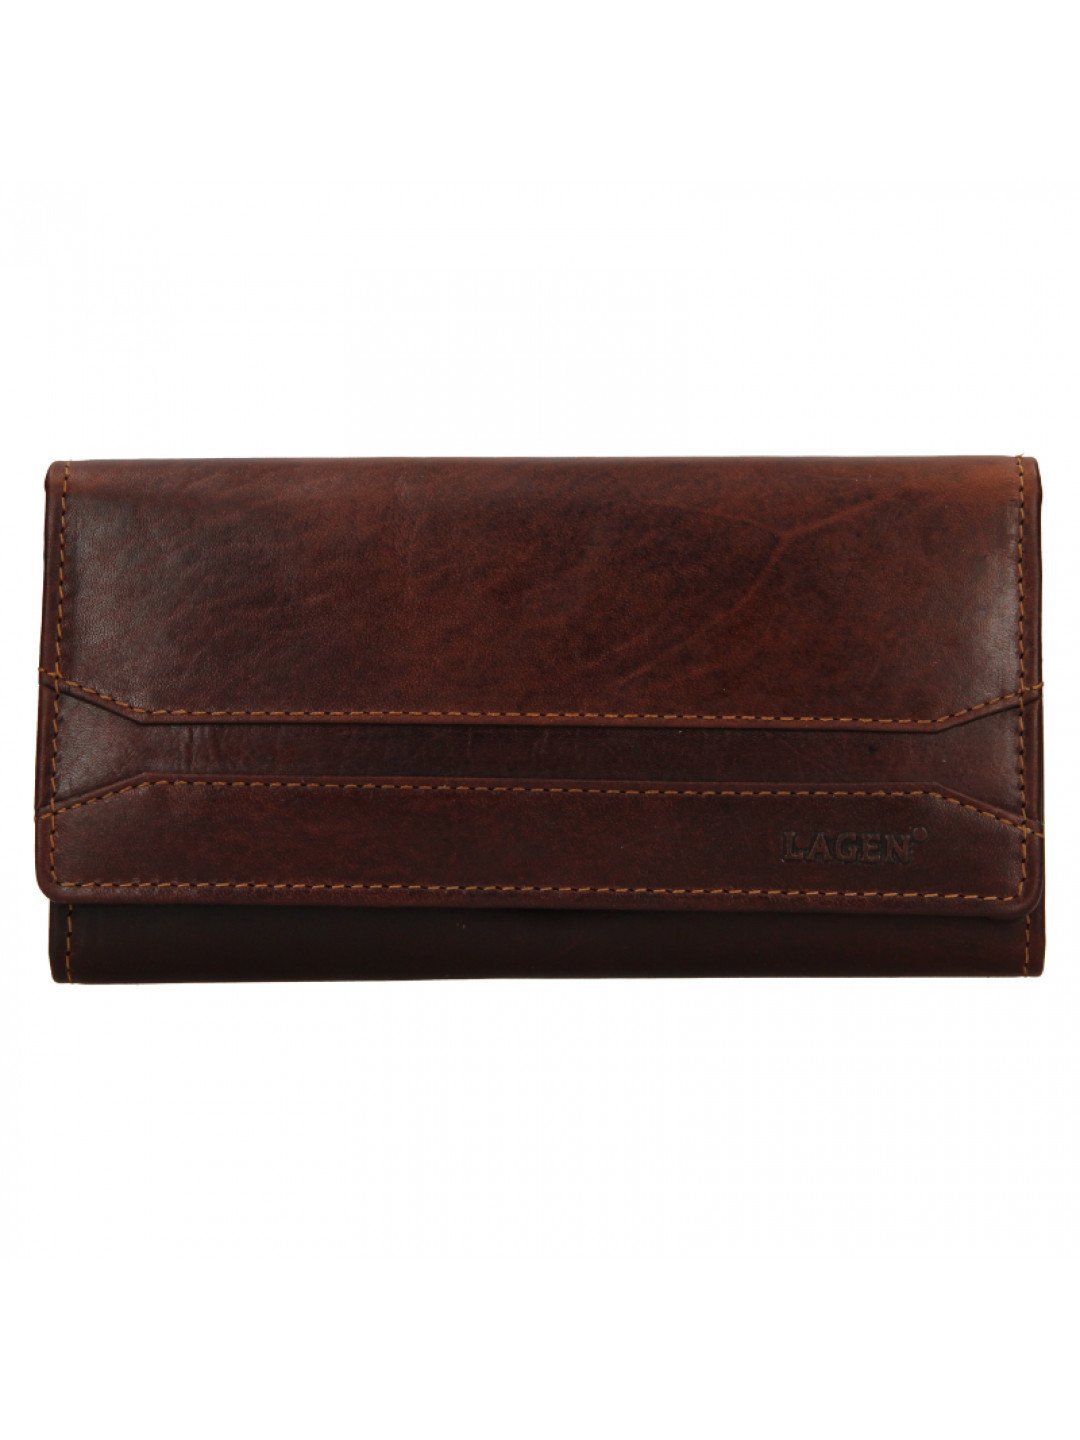 Luxusní dámská kožená peněženka W-22025 M hnědá